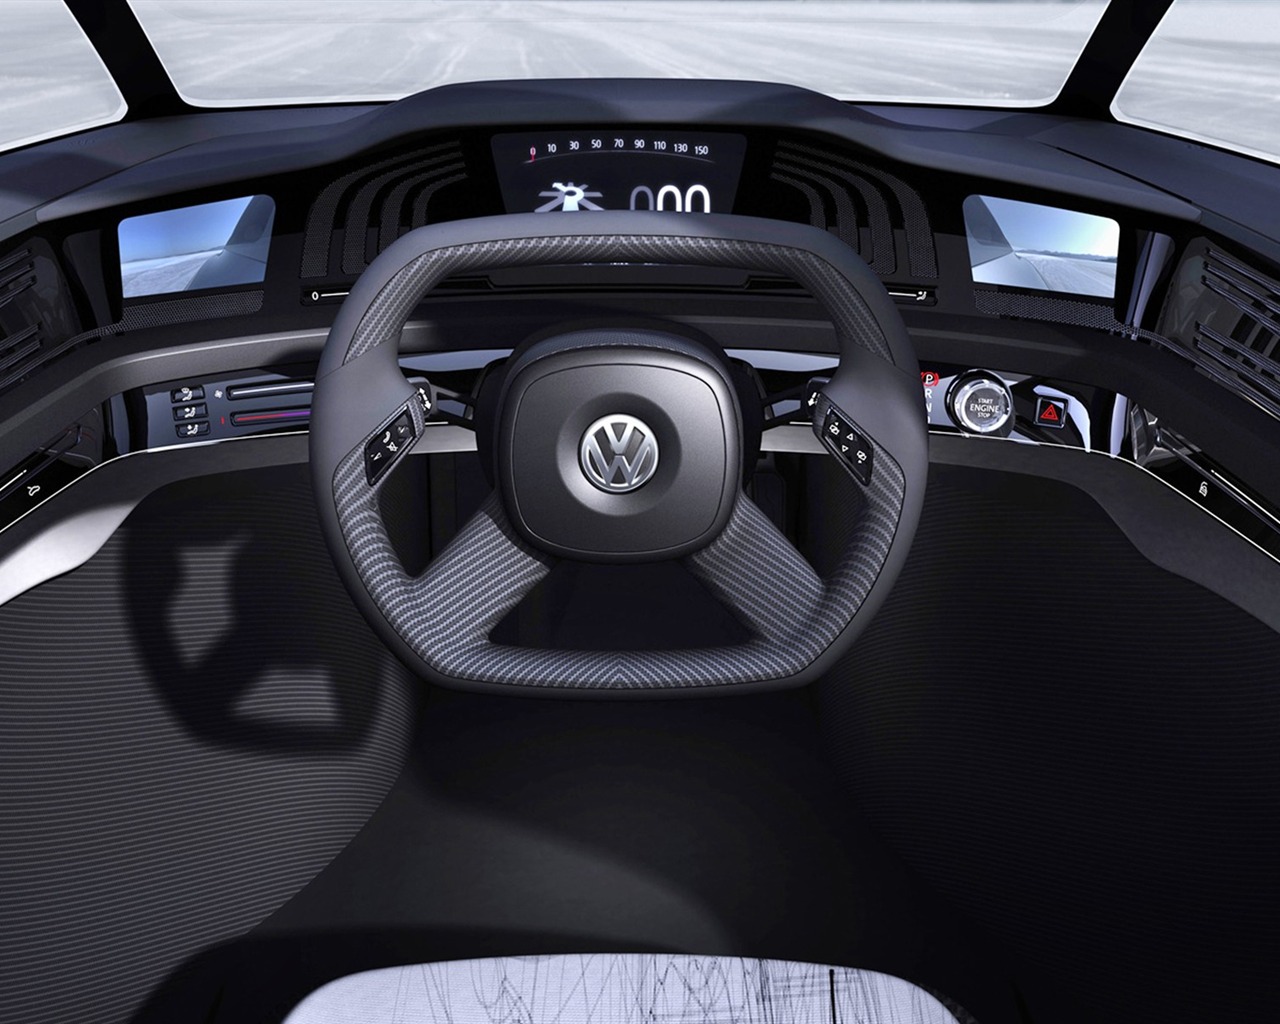 Volkswagen Concept Car Wallpaper (1) #14 - 1280x1024